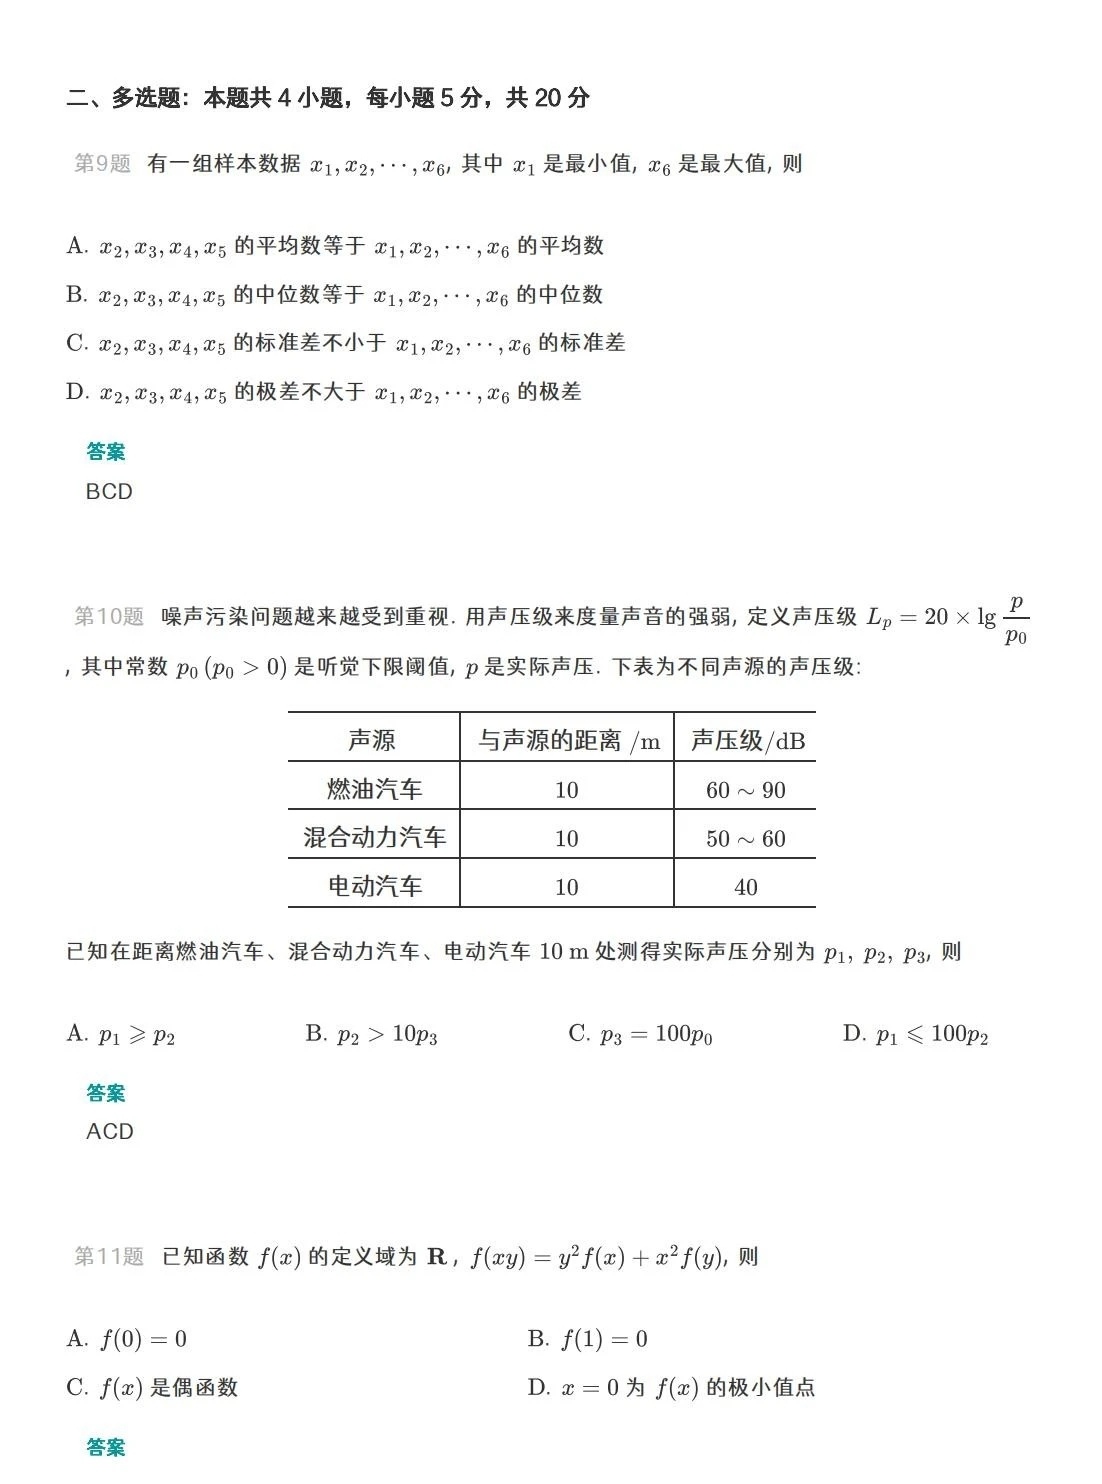 2023广东全国高考数学试题